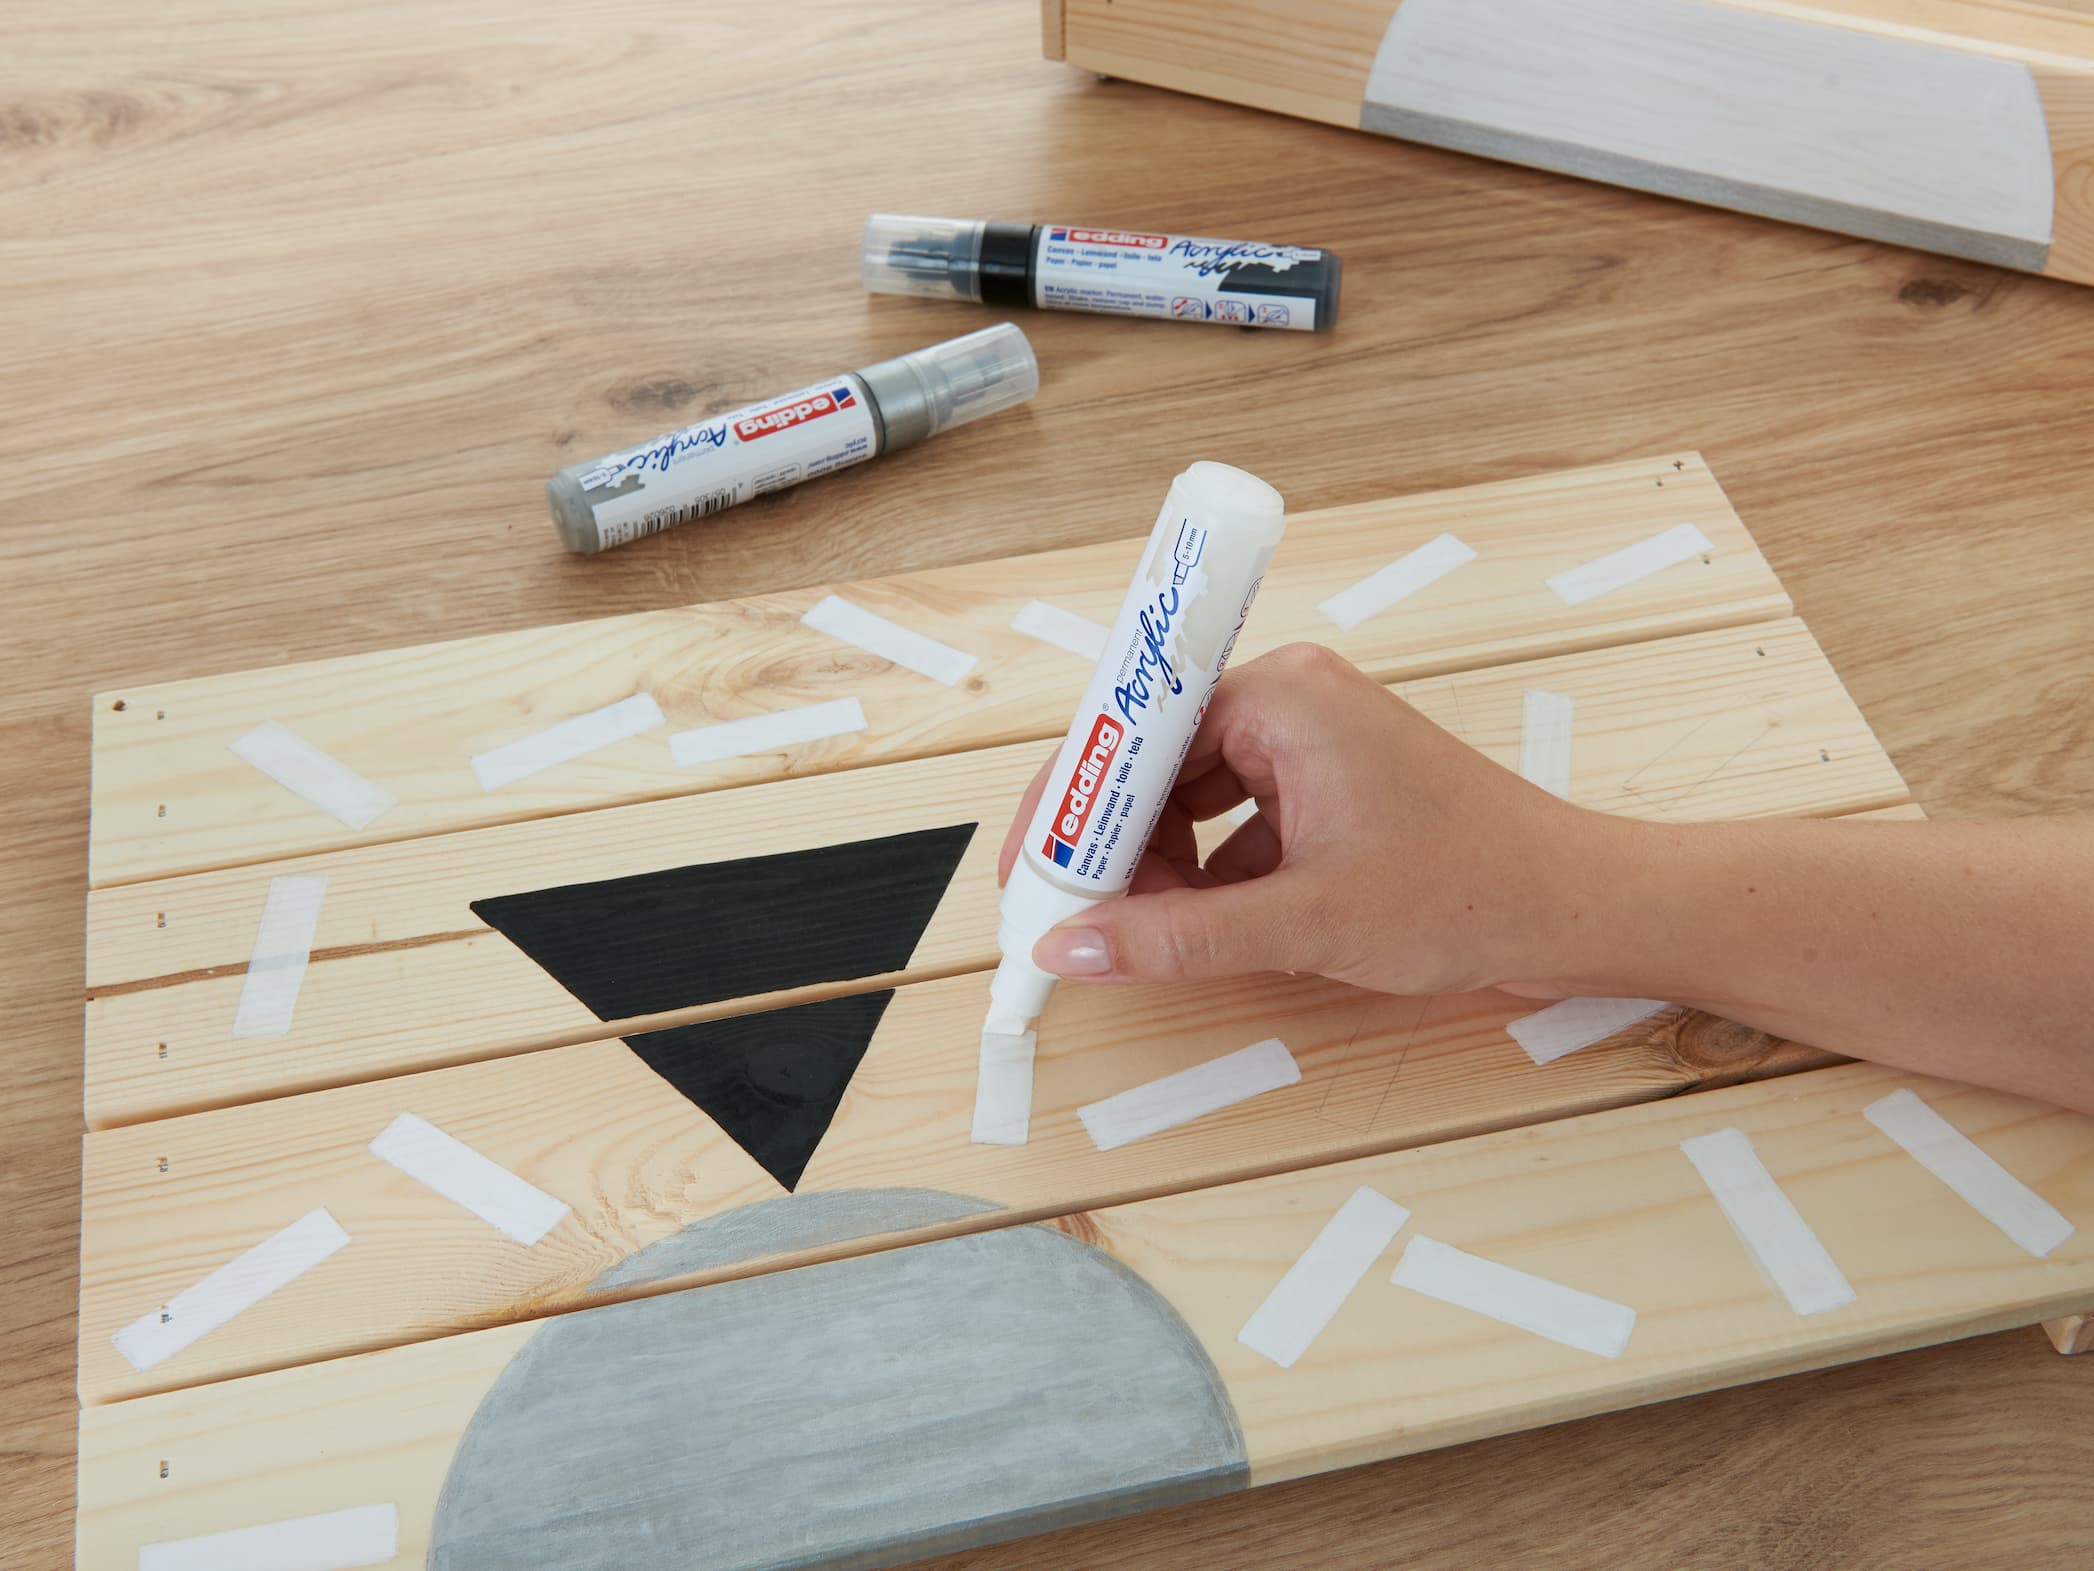 Eine Hand klebt als Vorbereitung für ein Bastel- oder Malprojekt Malerband auf ein Holzbrett, daneben liegen ein paar edding 5000 Acrylmarker breit.